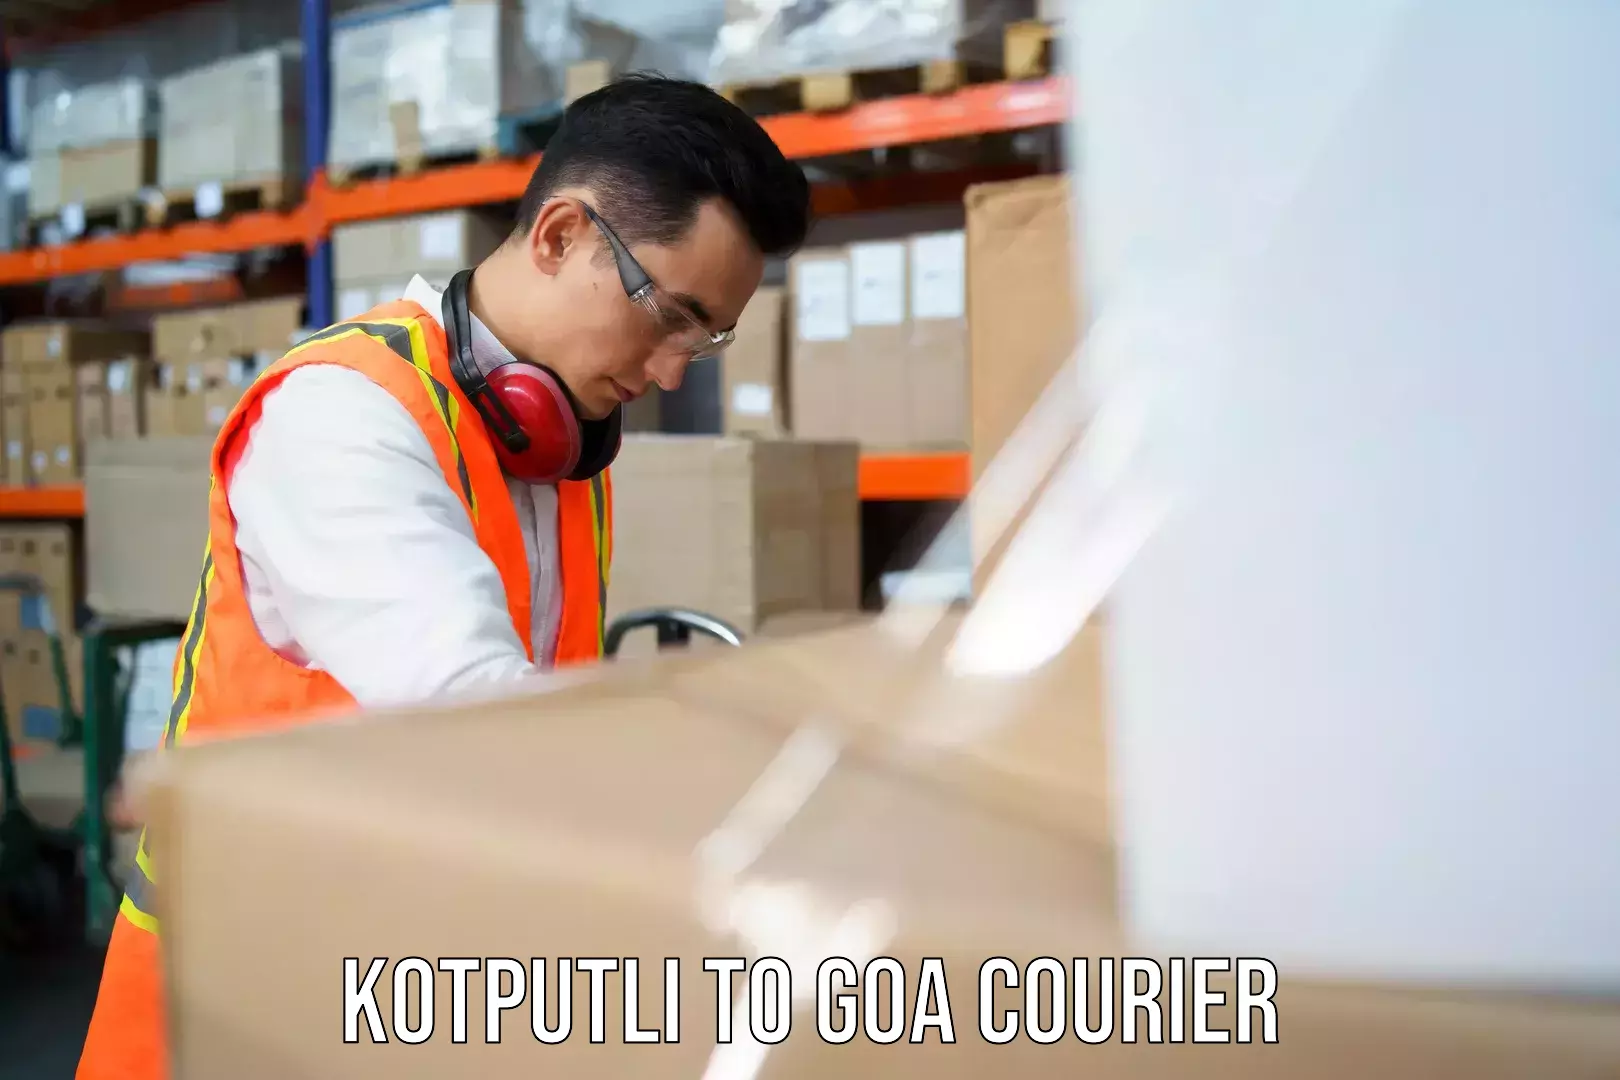 International courier rates Kotputli to Goa